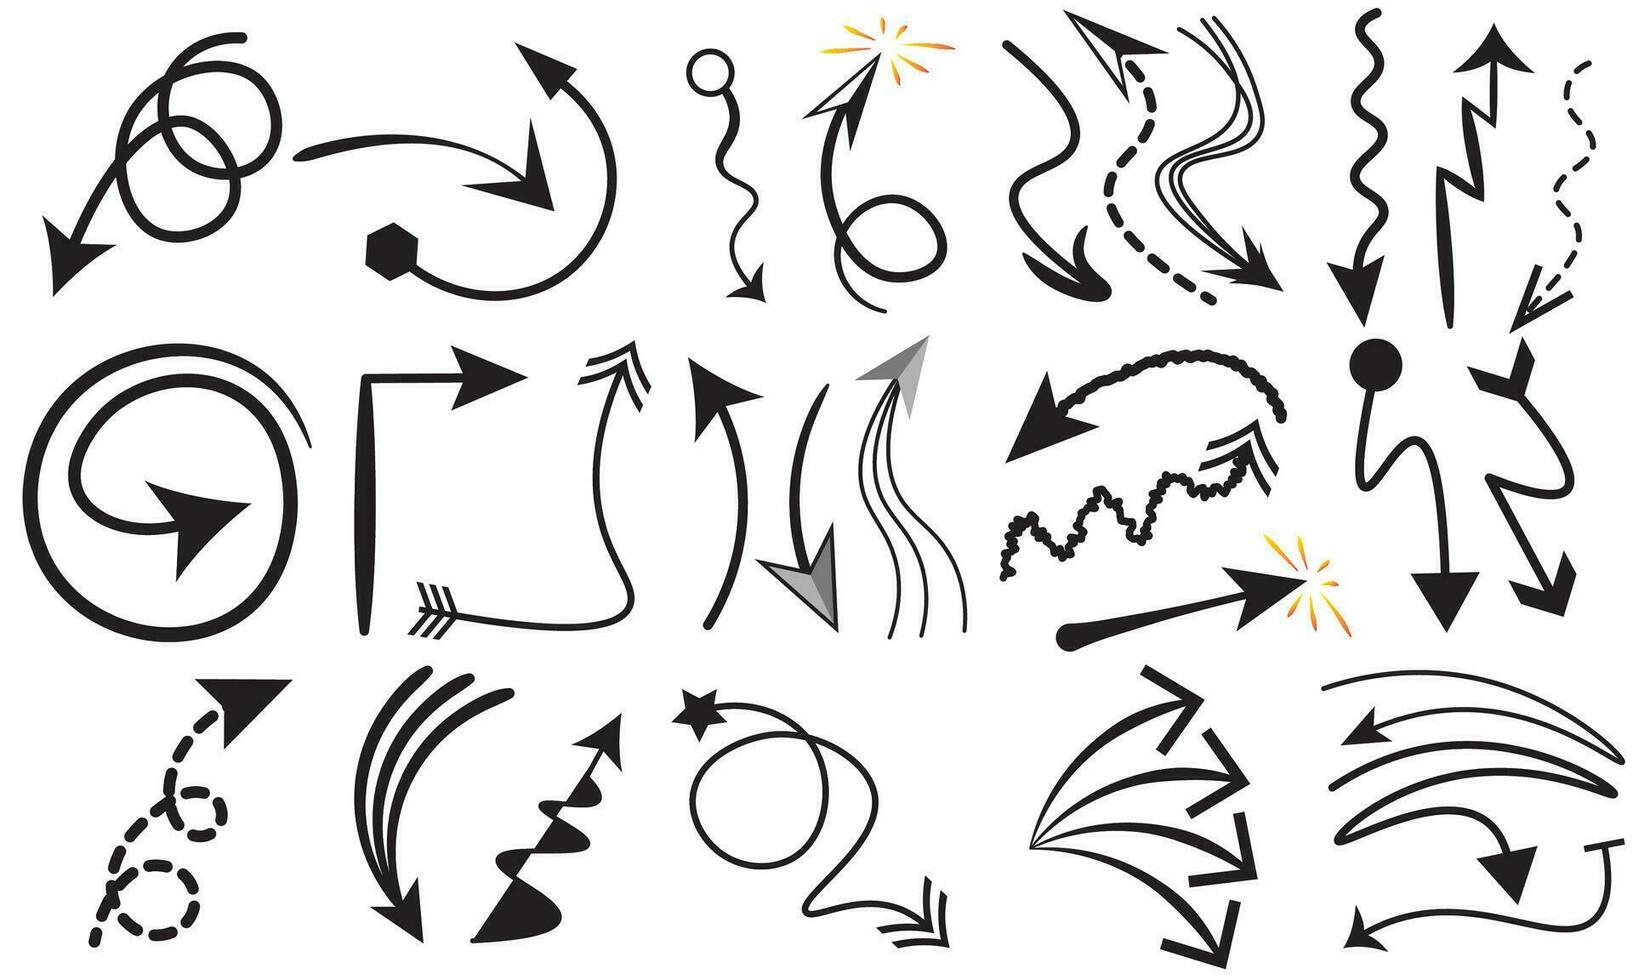 Sammlung Hand gezeichnet Pfeile.set einfach Pfeile isoliert auf Weiß hintergrund.hand gezeichnet Pfeil Kennzeichen Symbole Vektor